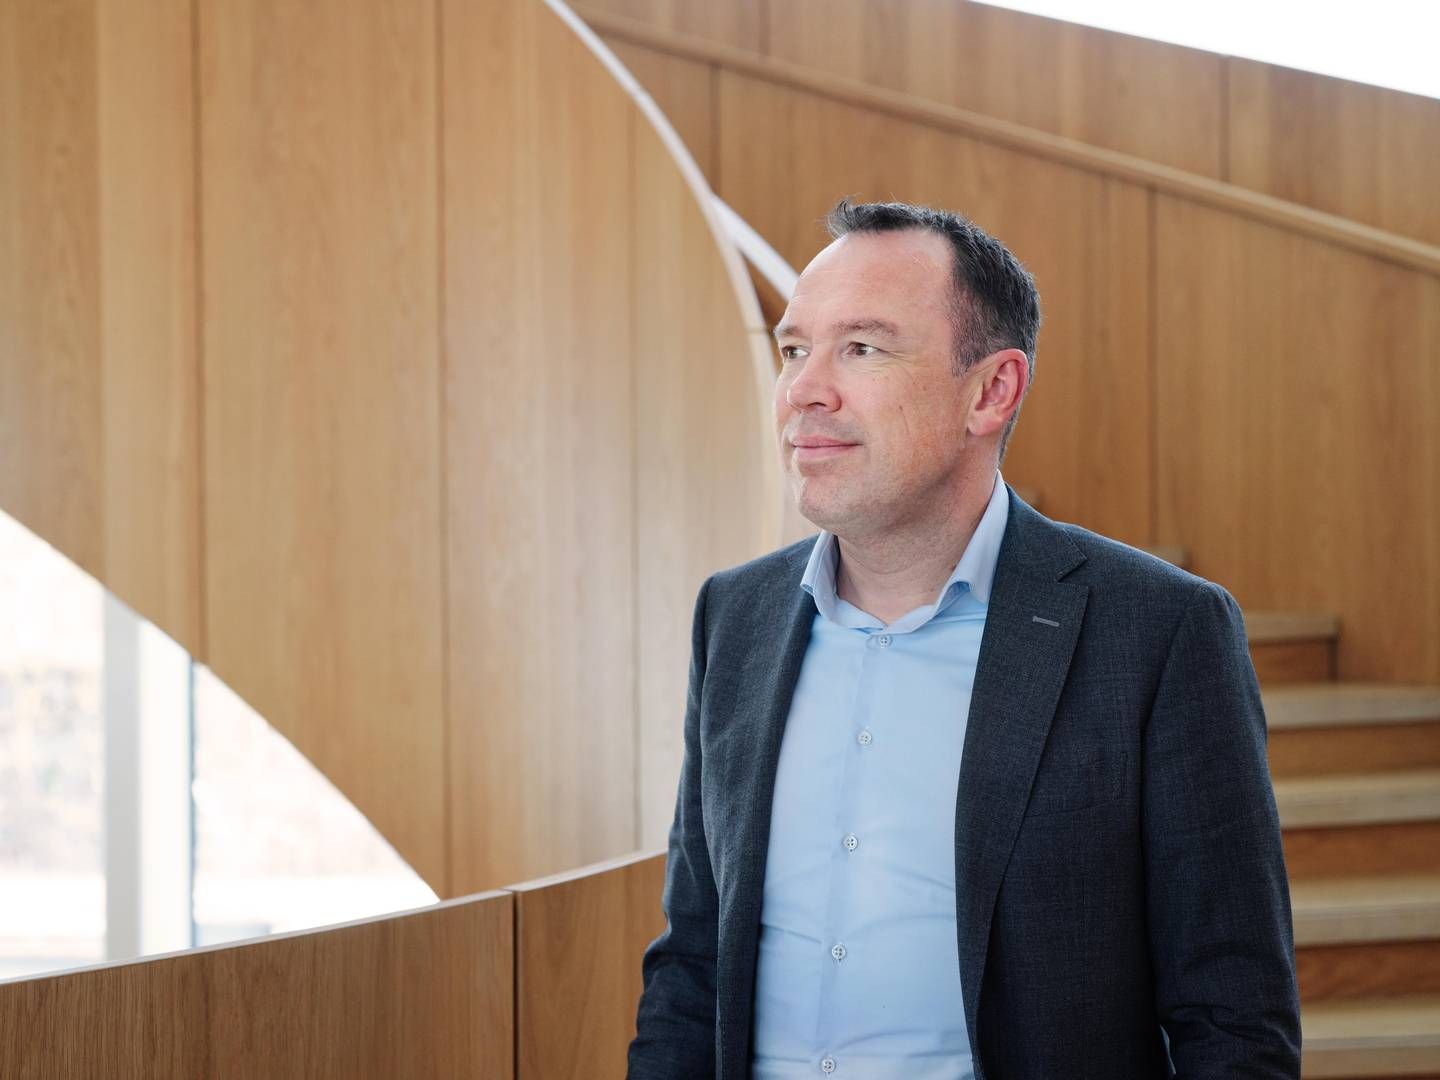 Hempel-chef Michael Hansen venter fortsat vækst for virksomheden på grund af den grønne omstillings krav om energibesparende teknologi i shipping. | Foto: Hempel